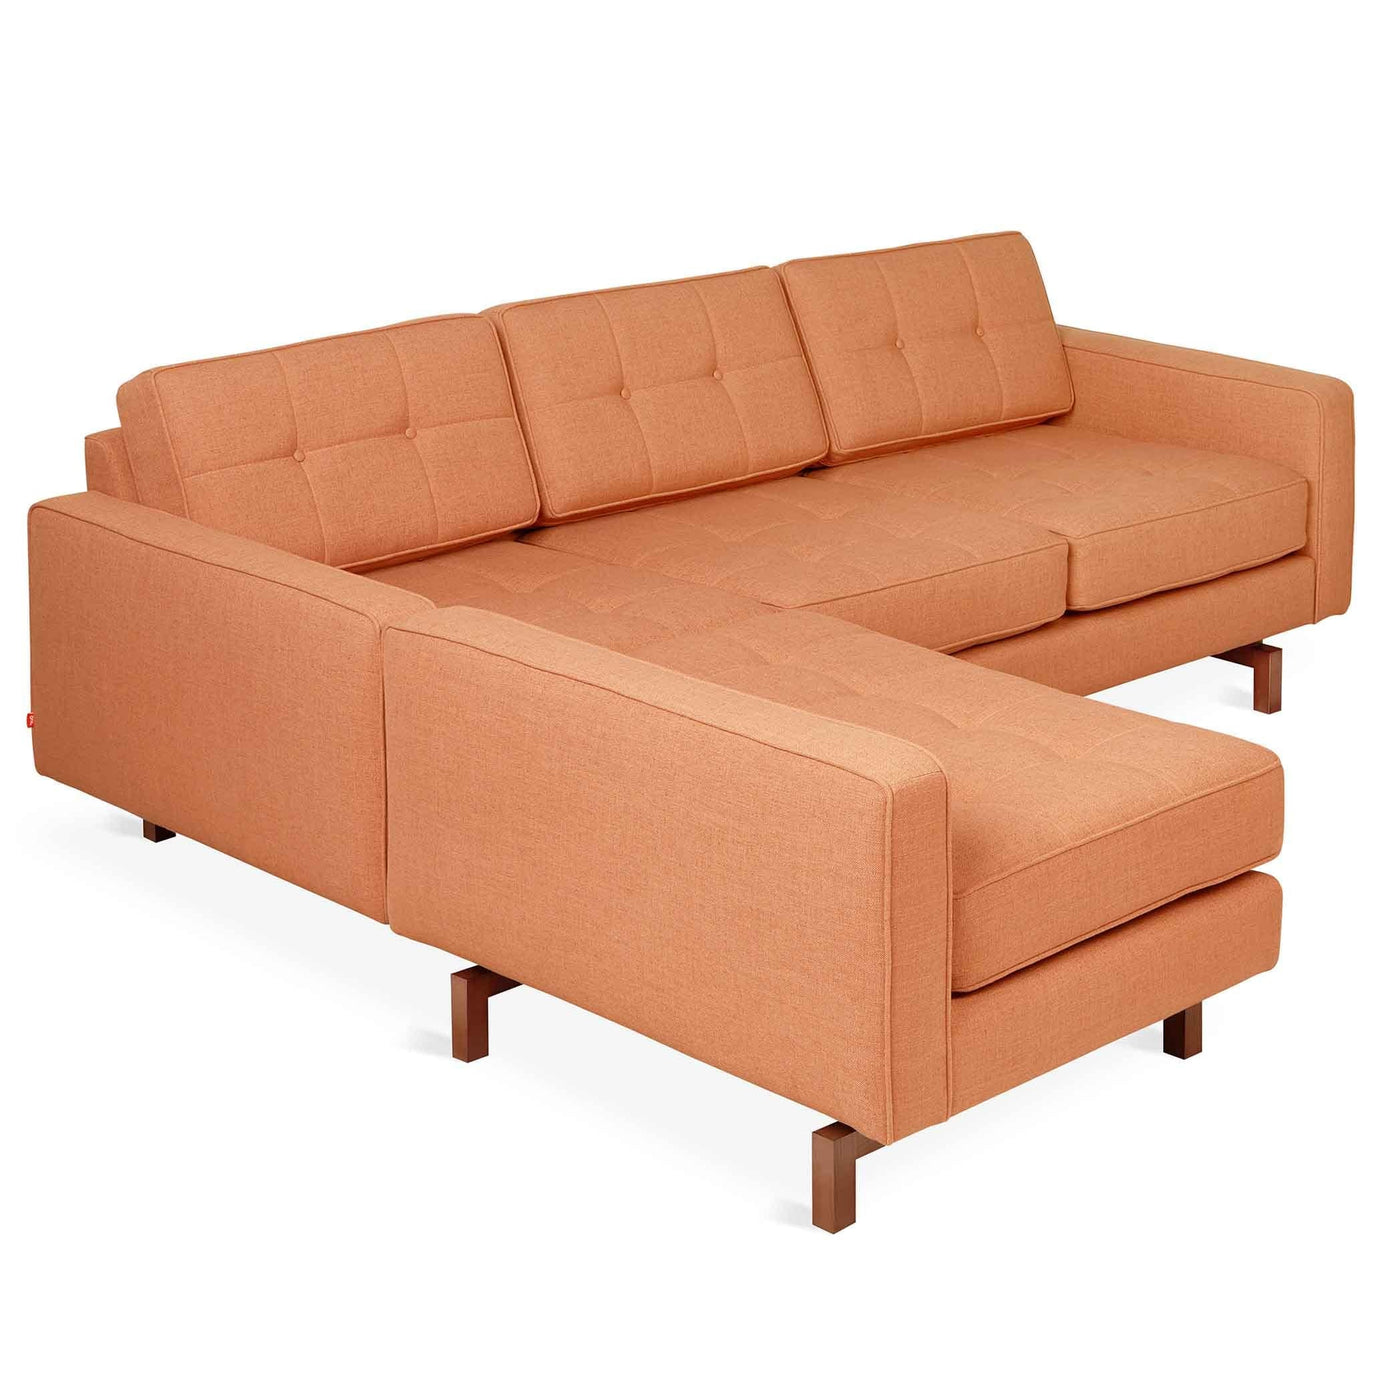 Gus* Modern Jane loft 2, sofa bi-sectionnel, en bois et tissu, caledon sedona, noyer